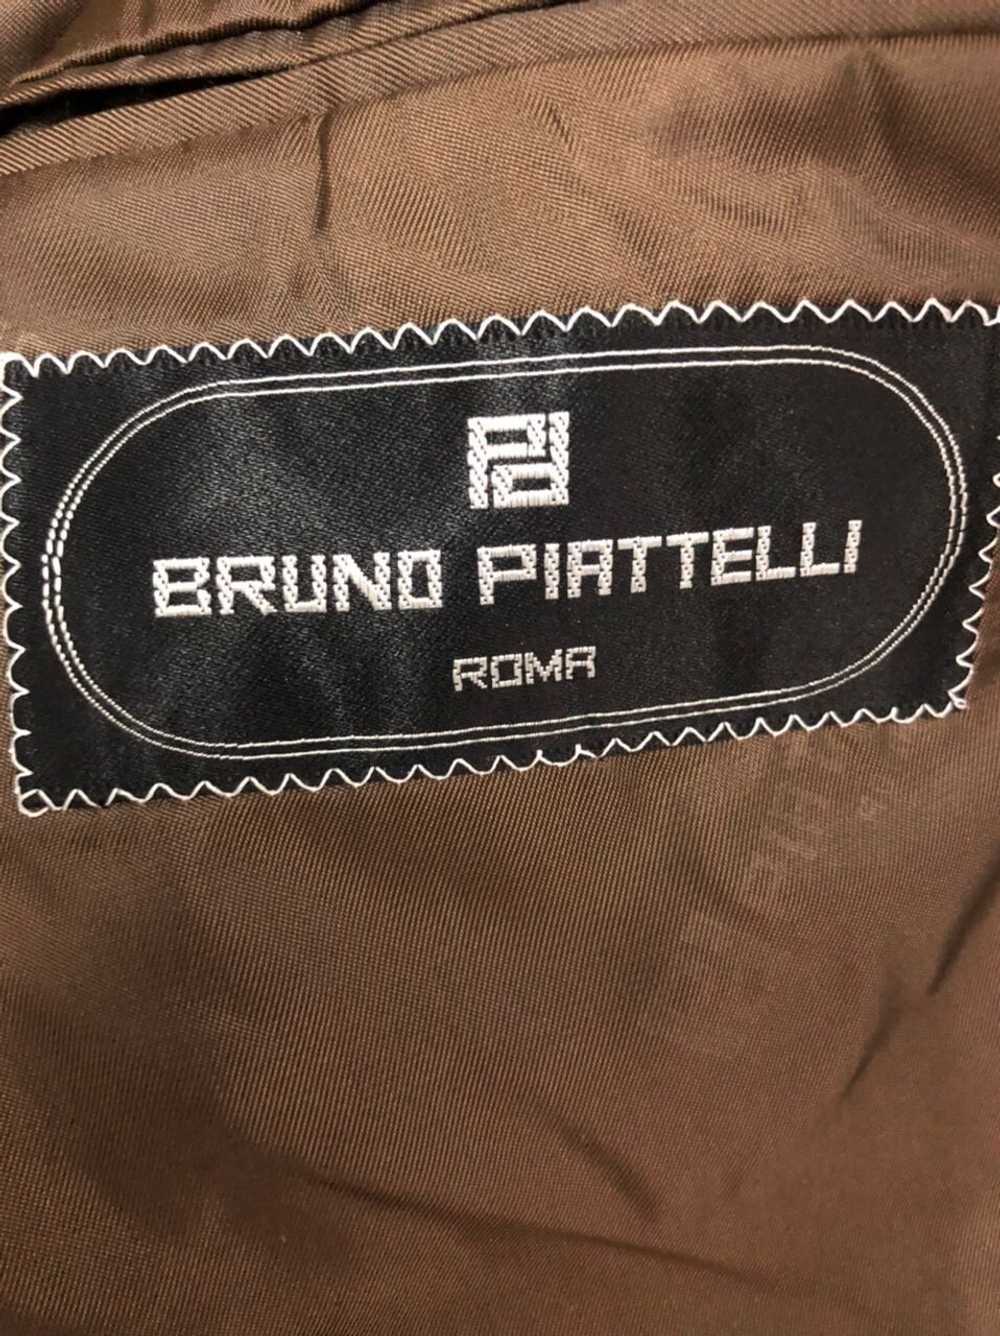 Bruno Piattelli Roma × Italian Designers × Vintag… - image 9